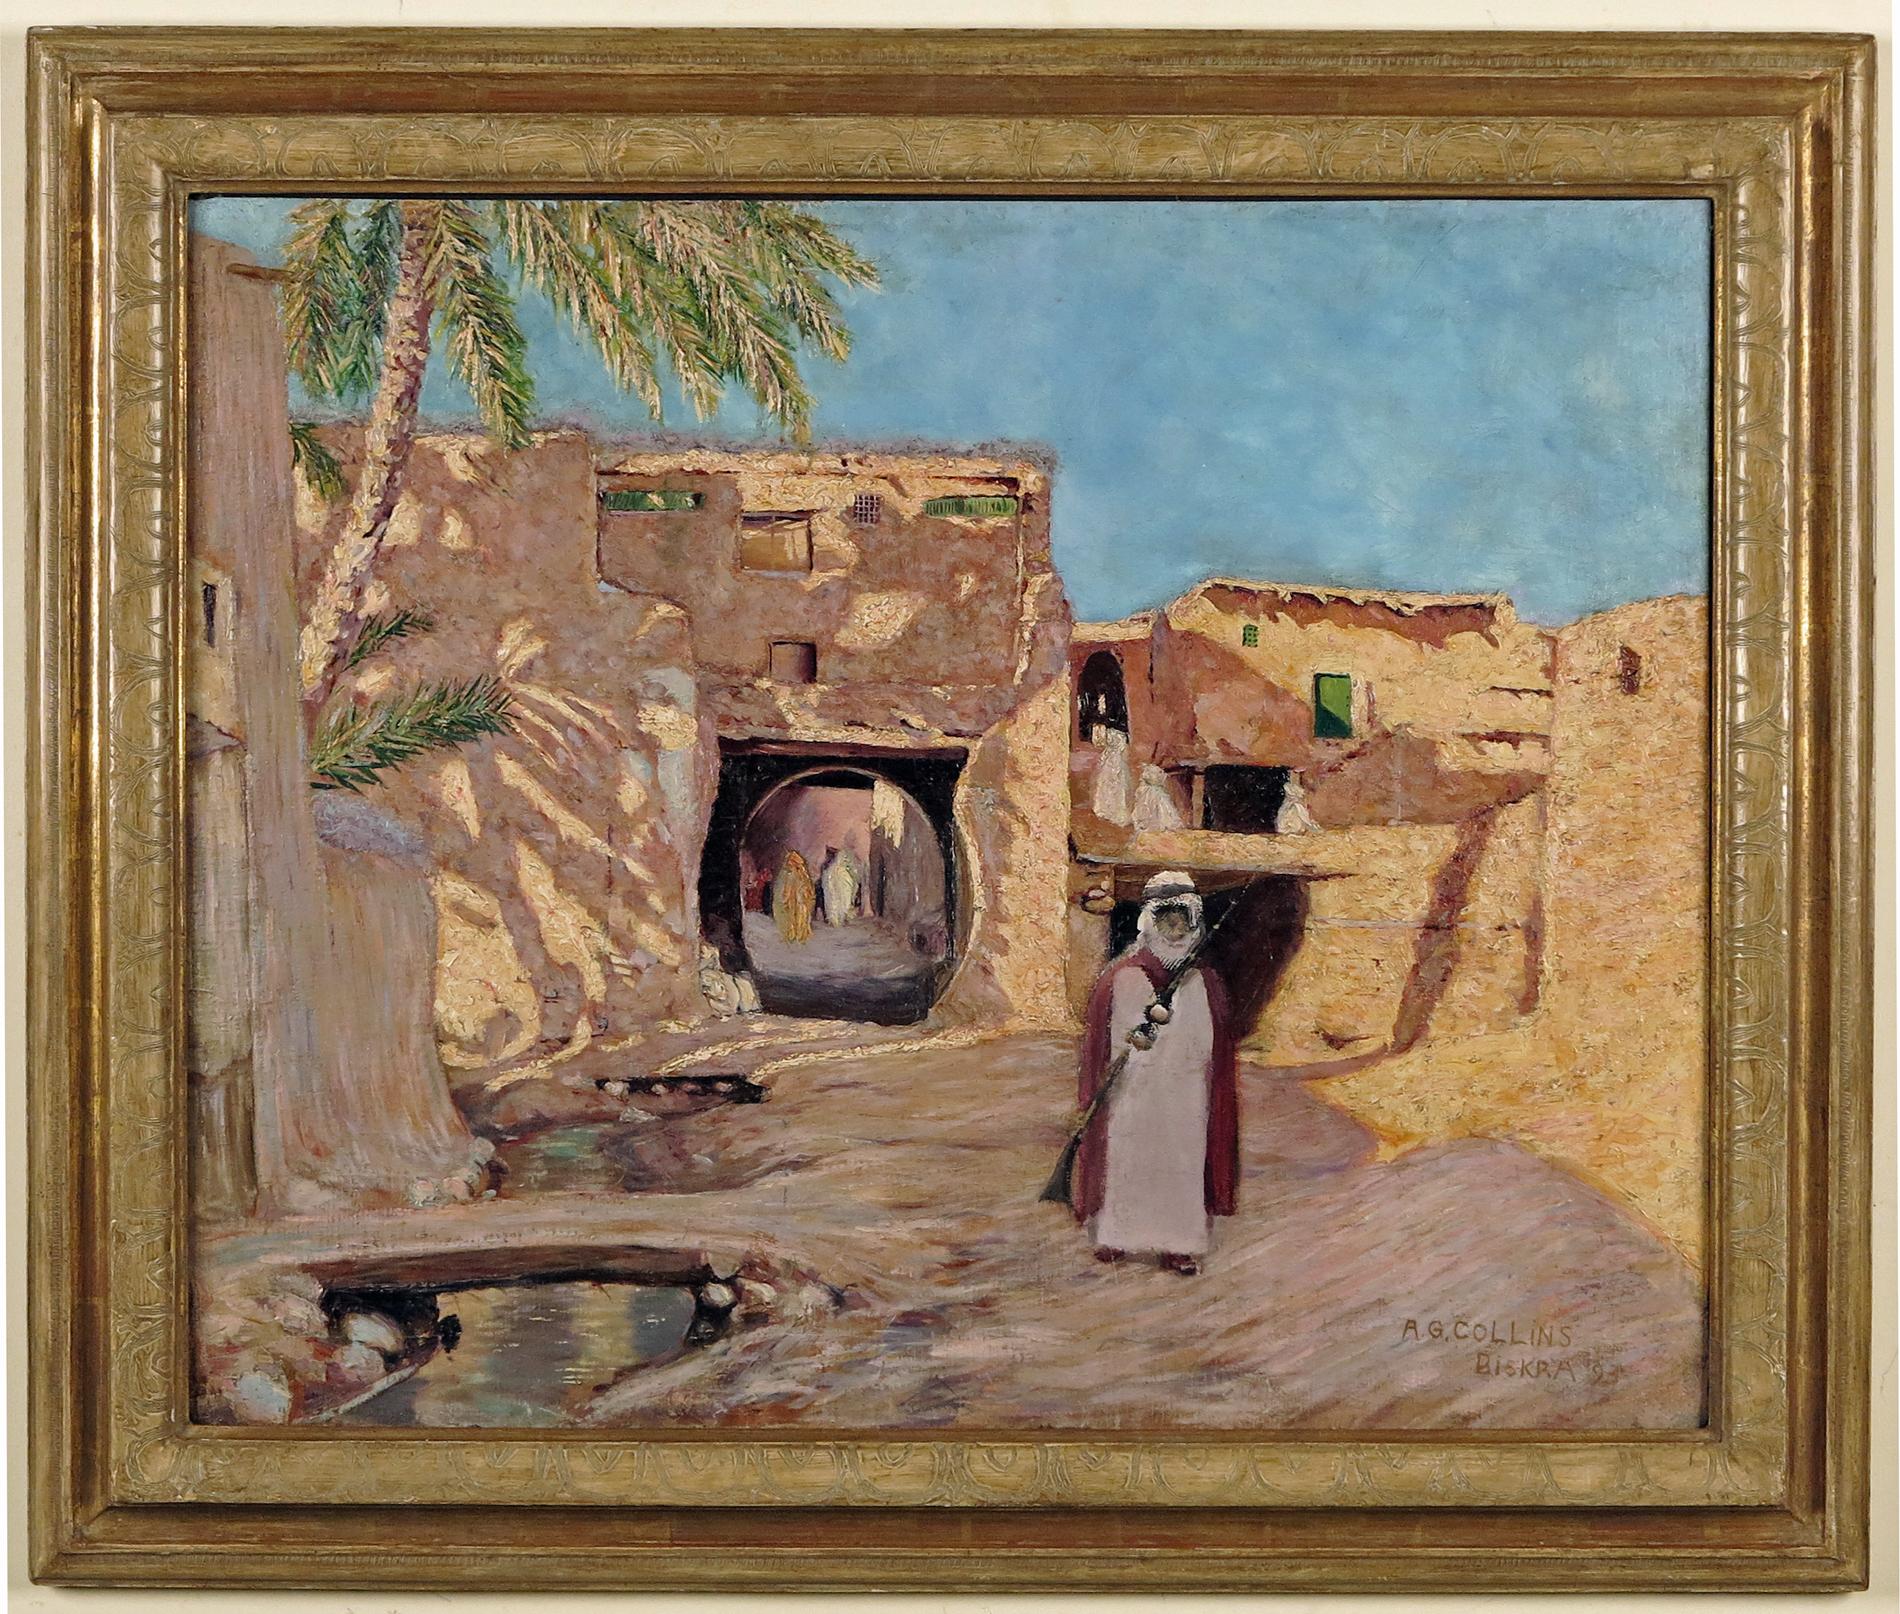 Biskra Algeria - Painting by Arthur George Collins